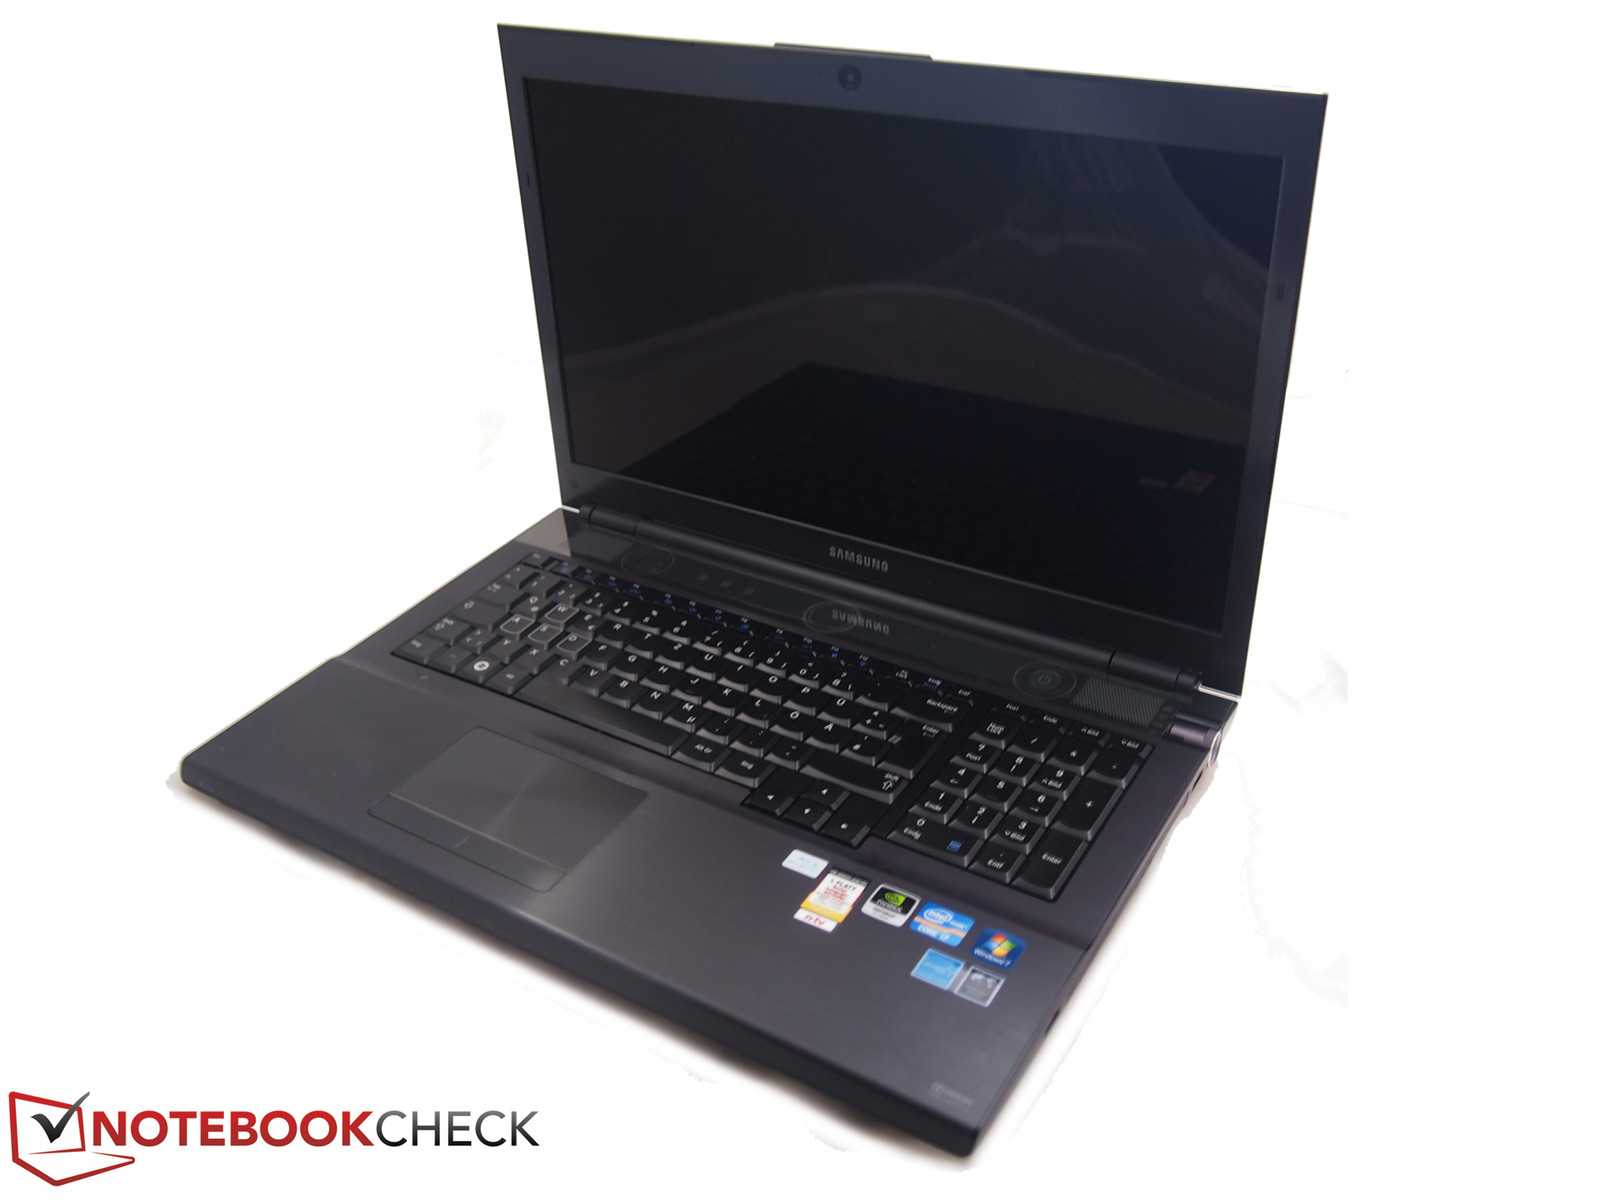 Ноутбук samsung 700g7c-t02 — купить, цена и характеристики, отзывы